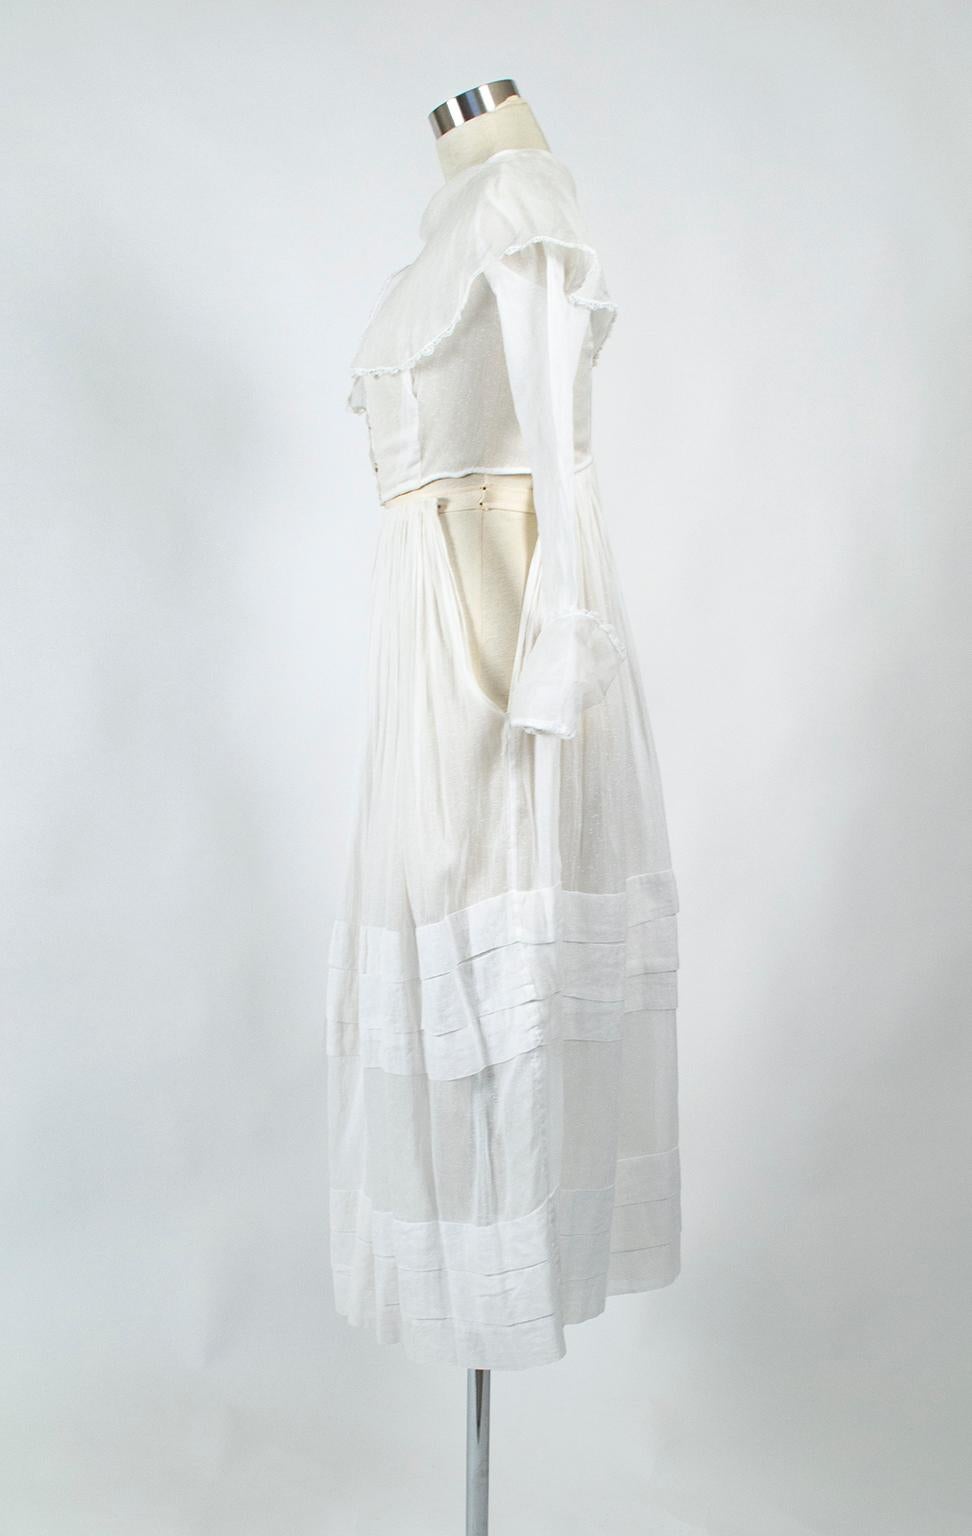 shirtwaist dress 1910